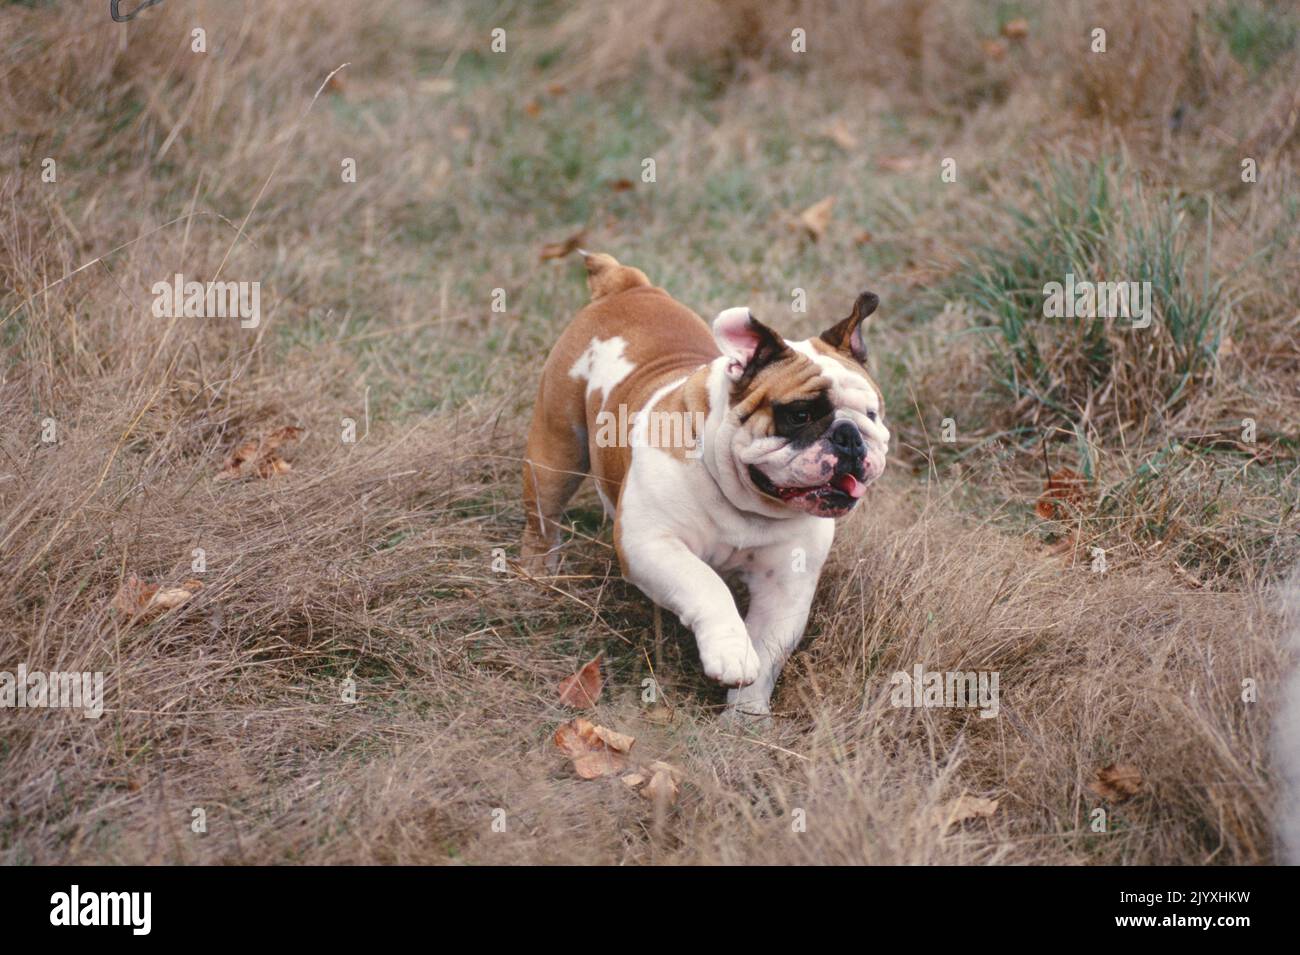 Bulldog anglais courant dans l'herbe morte Banque D'Images